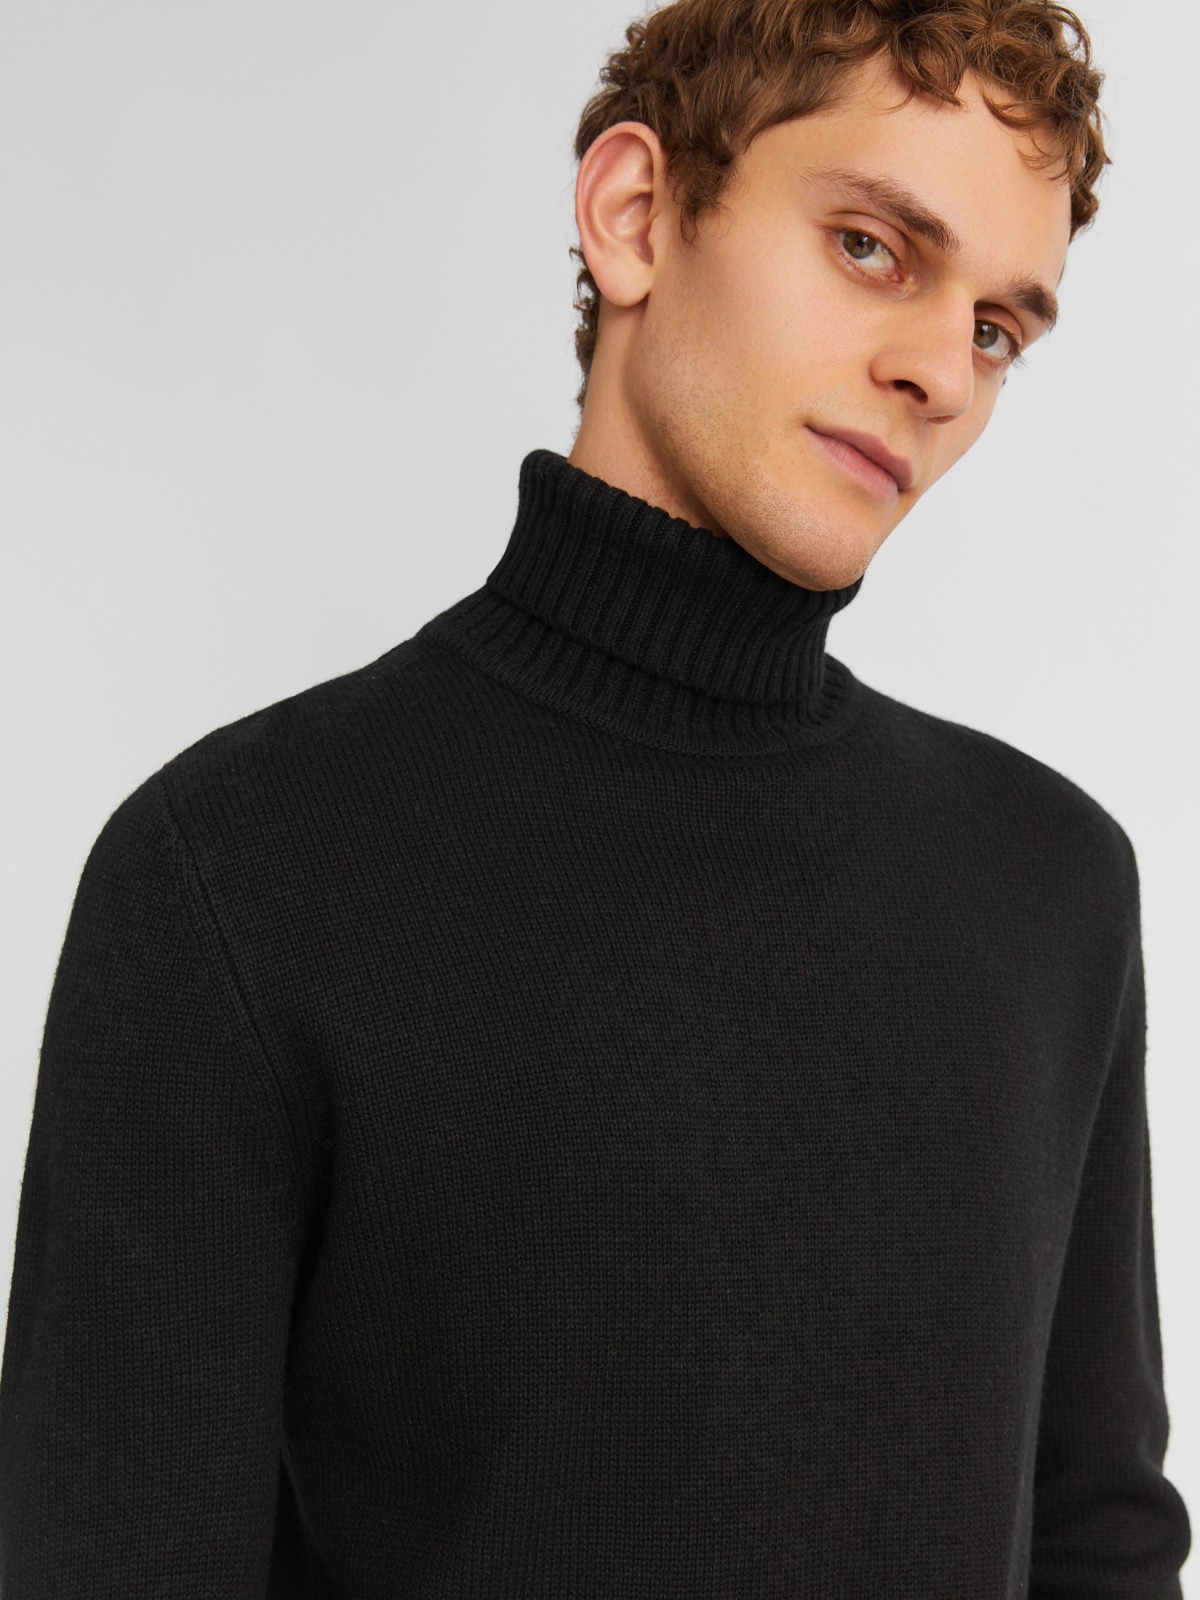 Вязаная шерстяная водолазка-свитер с горлом zolla 013436163072, цвет черный, размер M - фото 3